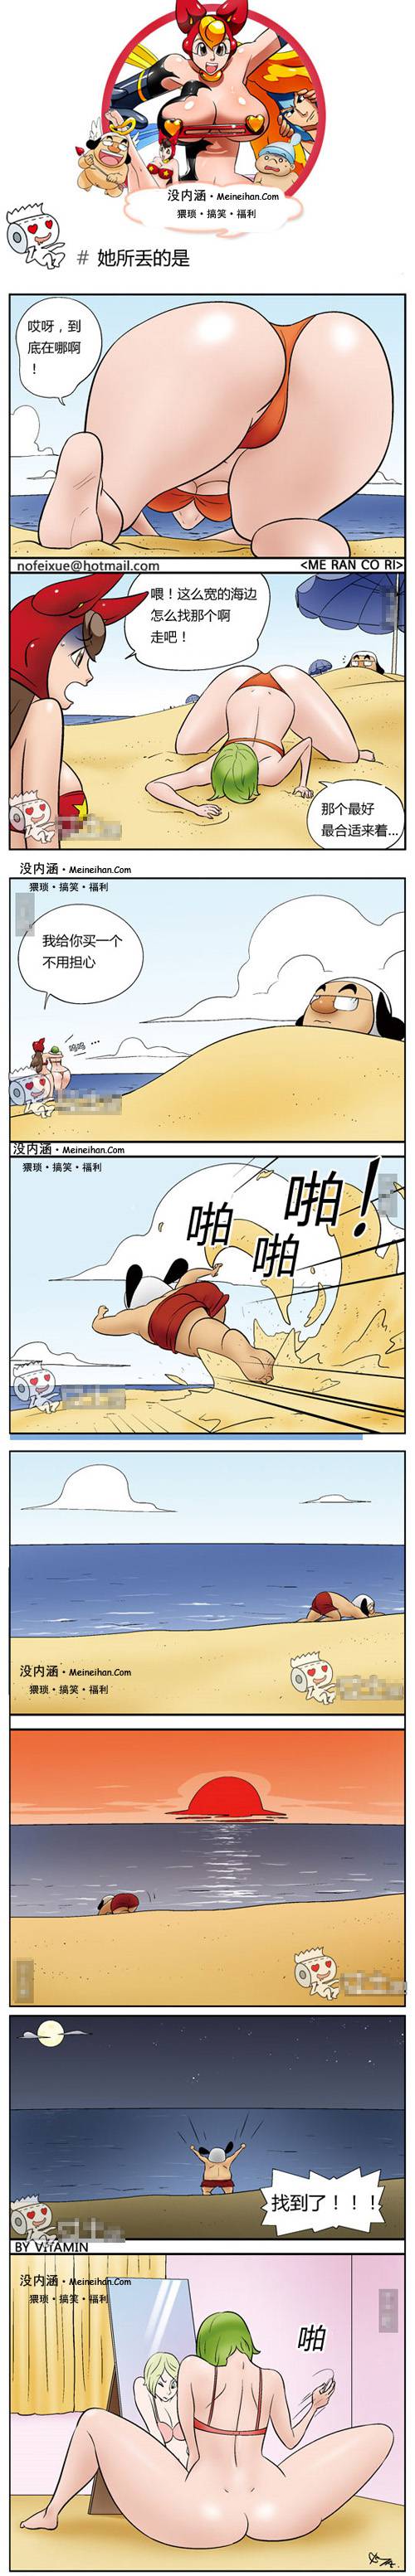 邪恶漫画爆笑囧图第126刊：初体验